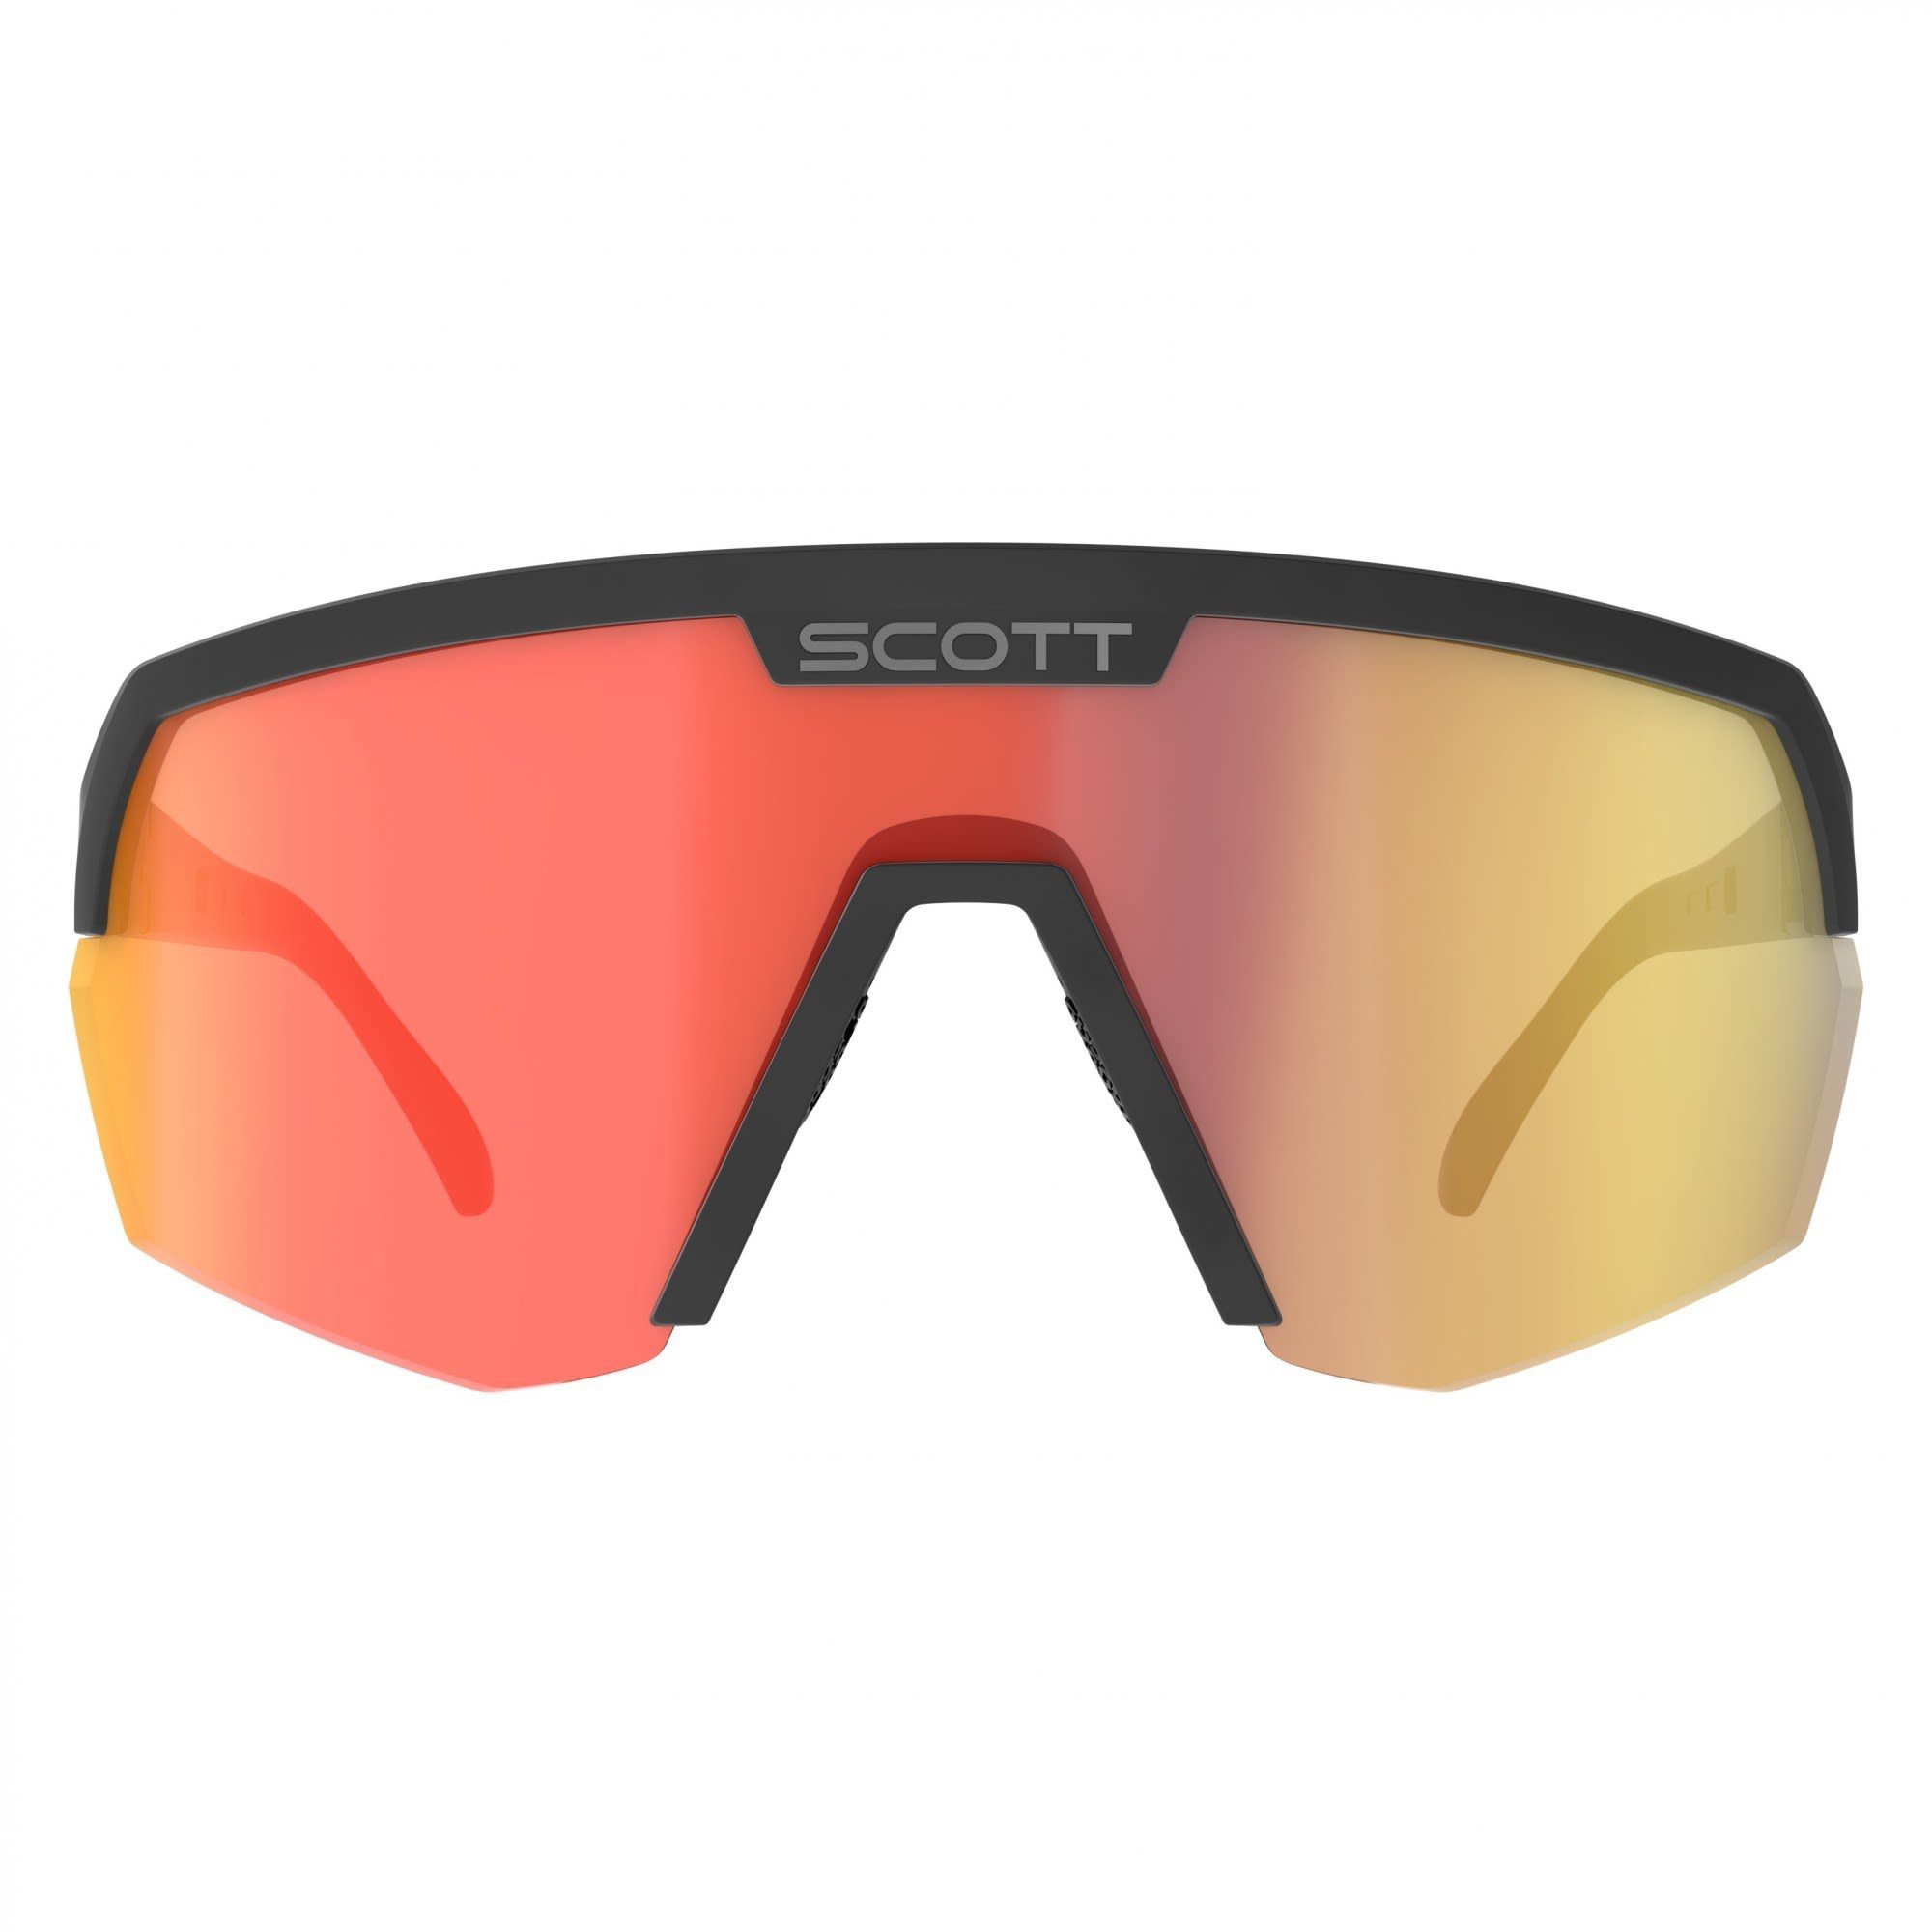 Chrome Scott Sunglasses Red Accessoires Fahrradbrille Scott - Black Shield Sport